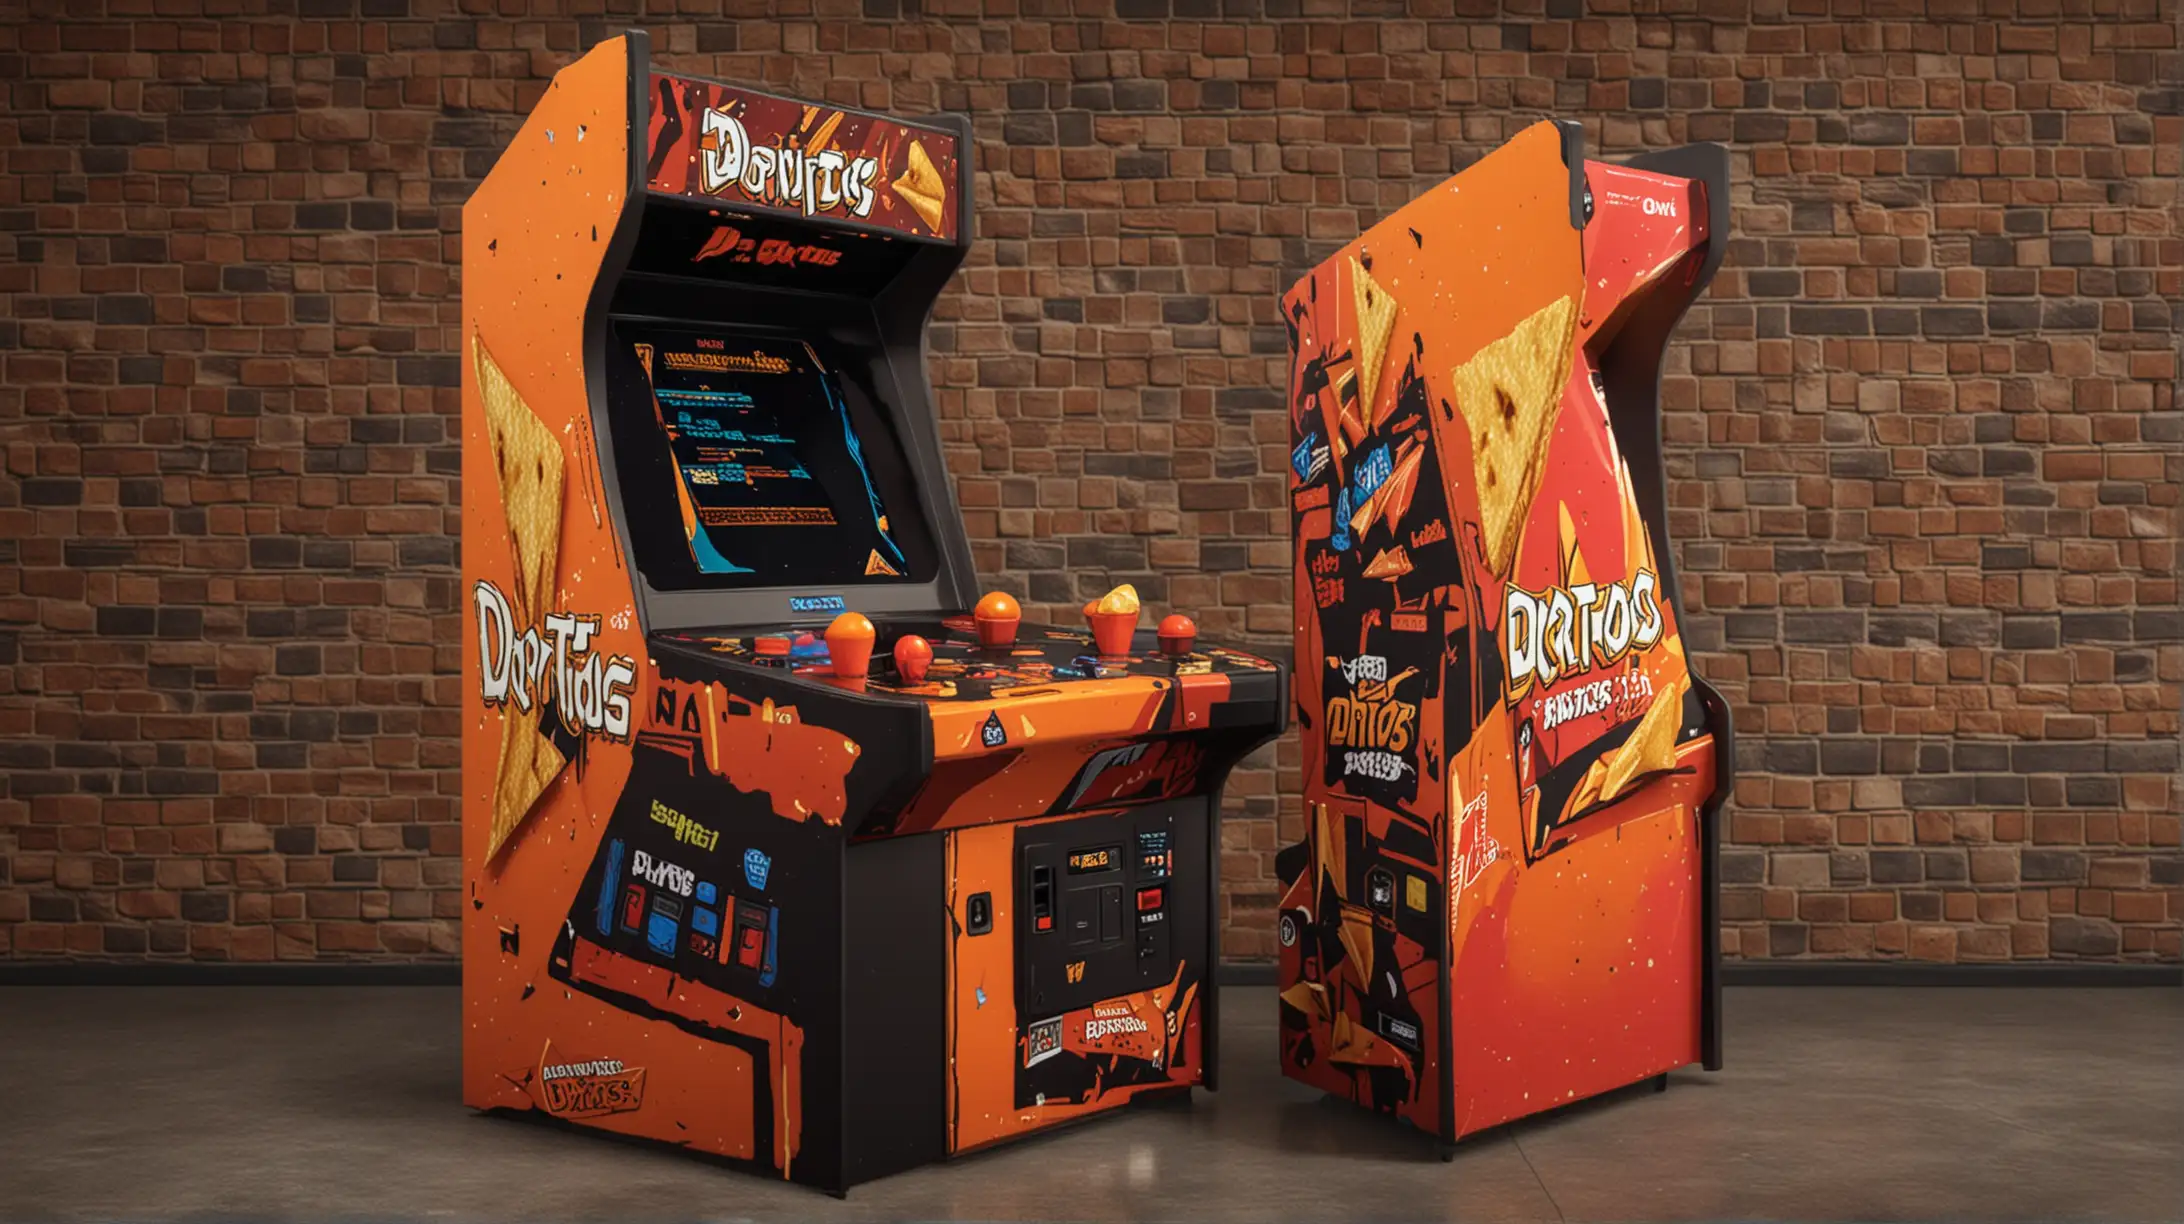 Retro Arcade Game with Doritos Theme